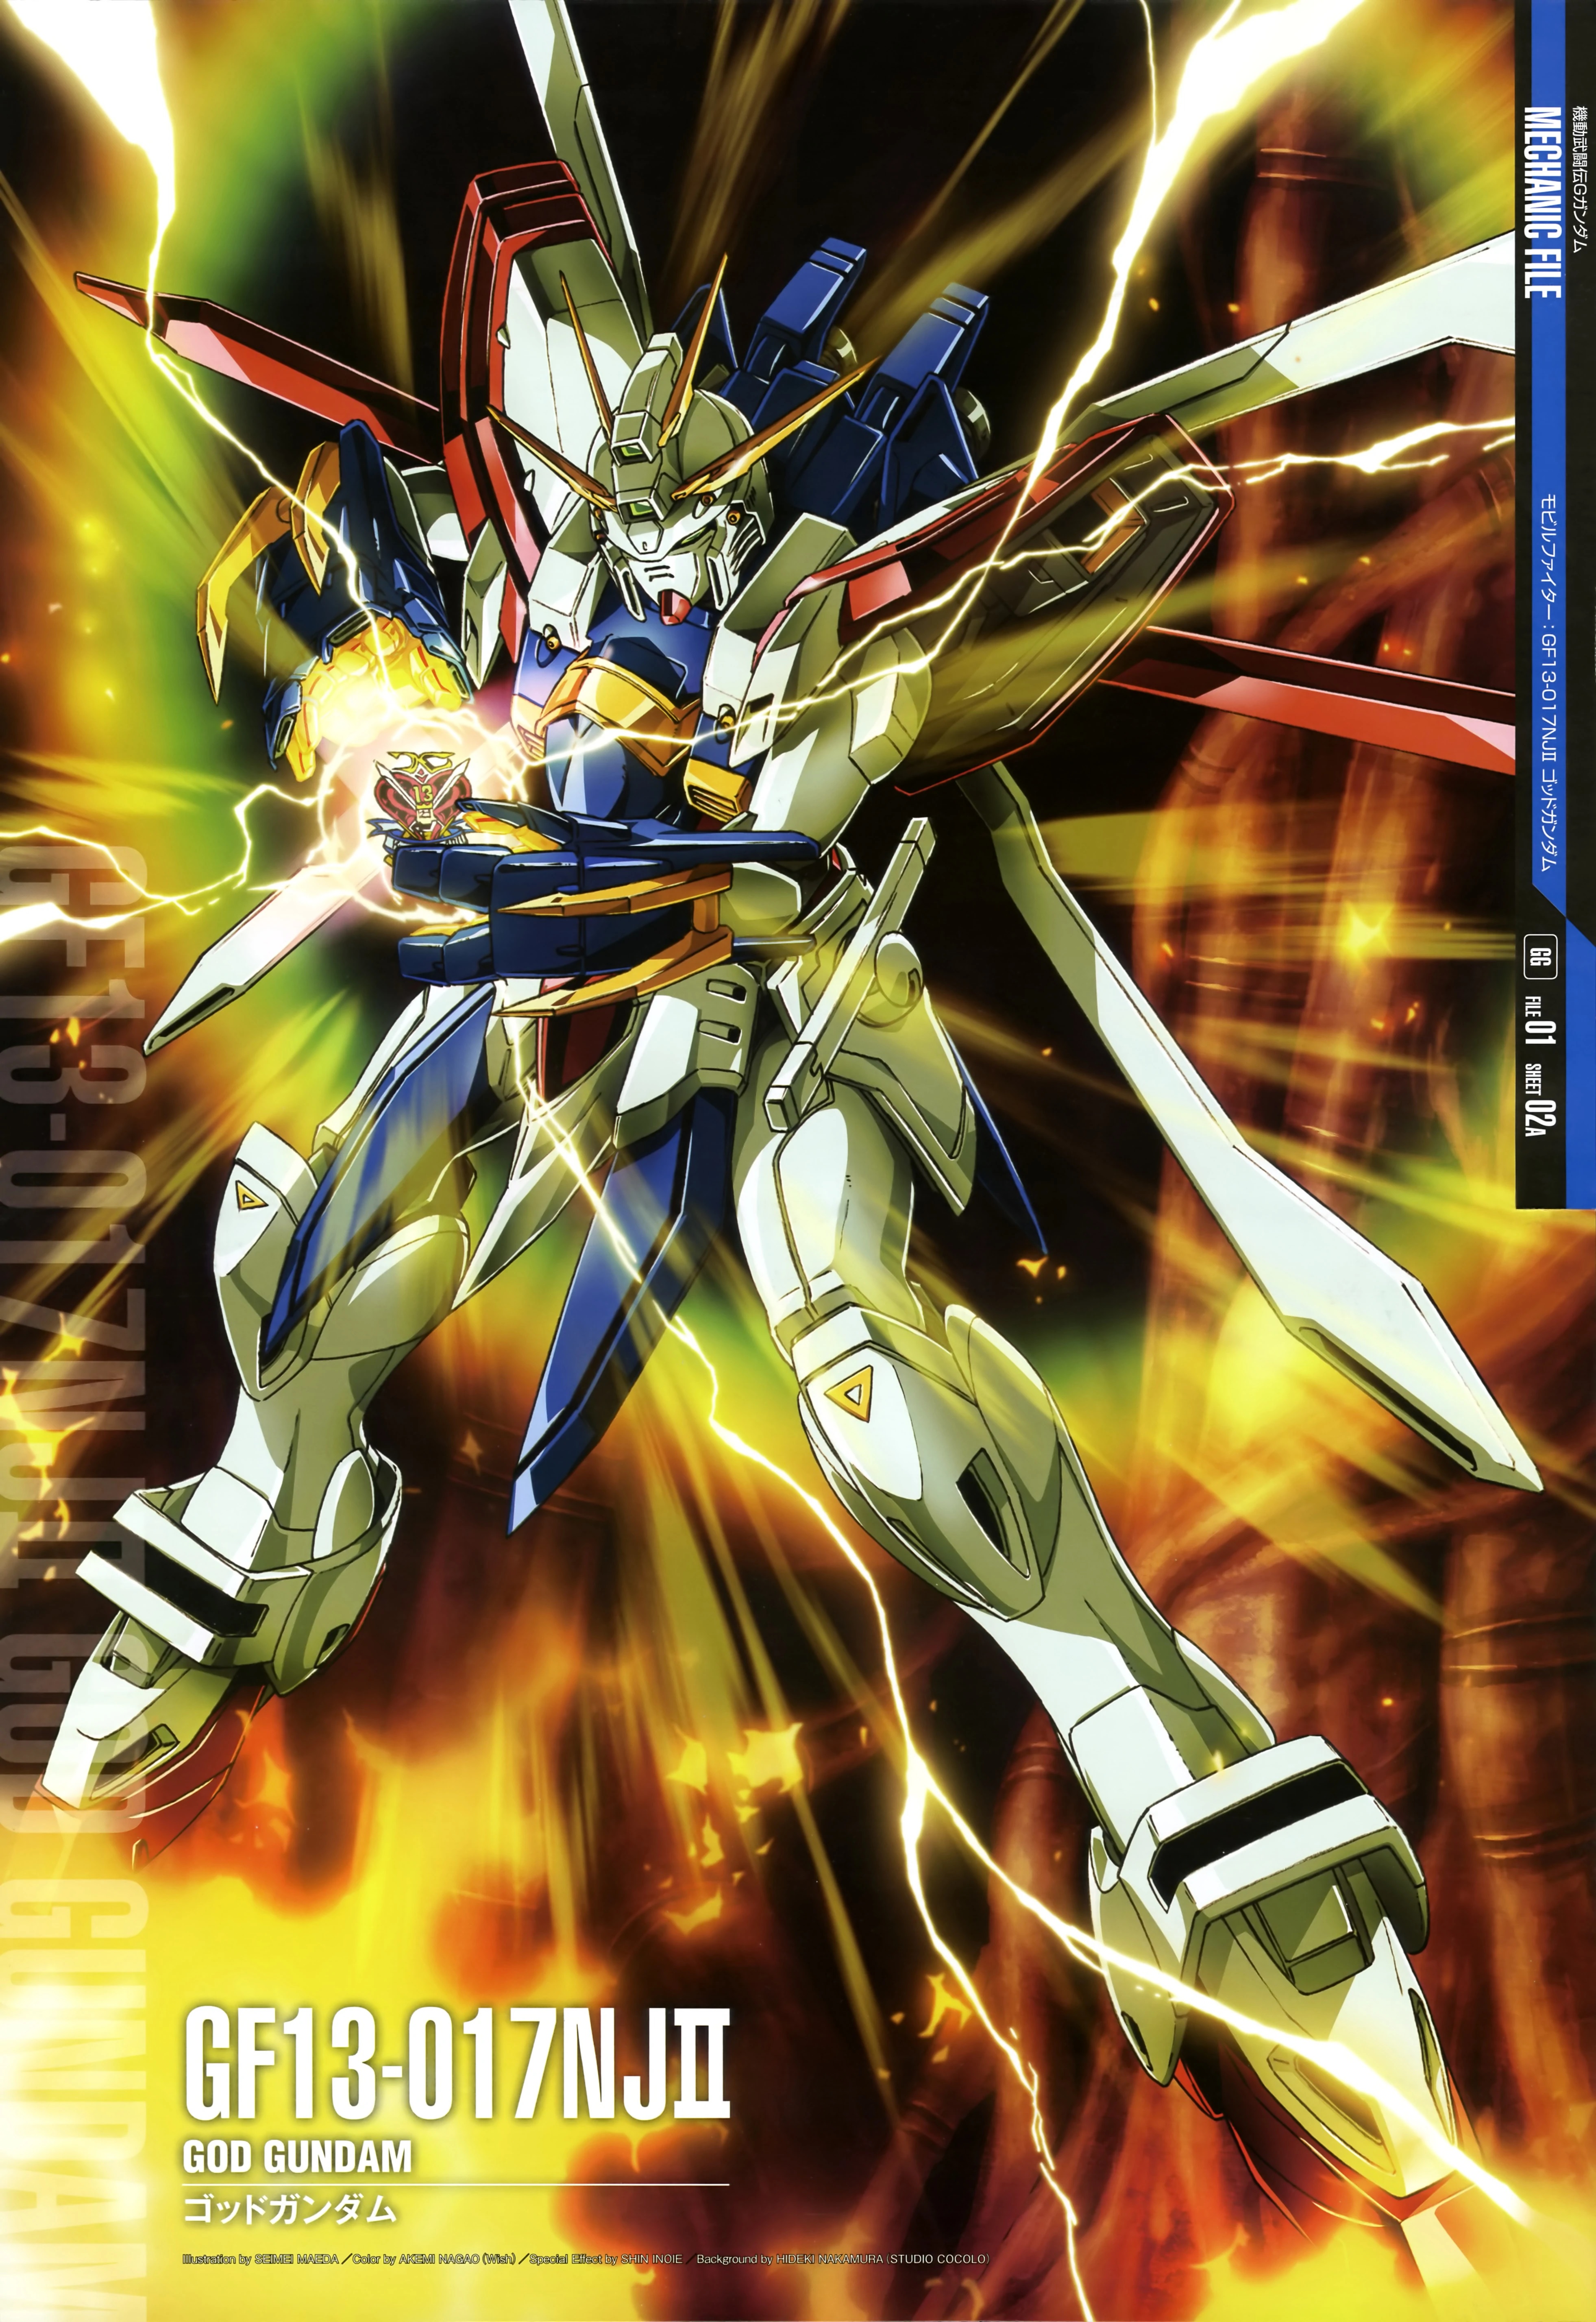 Anime Mechs Gundam Mobile Fighter G Gundam Super Robot Taisen God Gundam Artwork Digital Art Fan Art 3925x5709